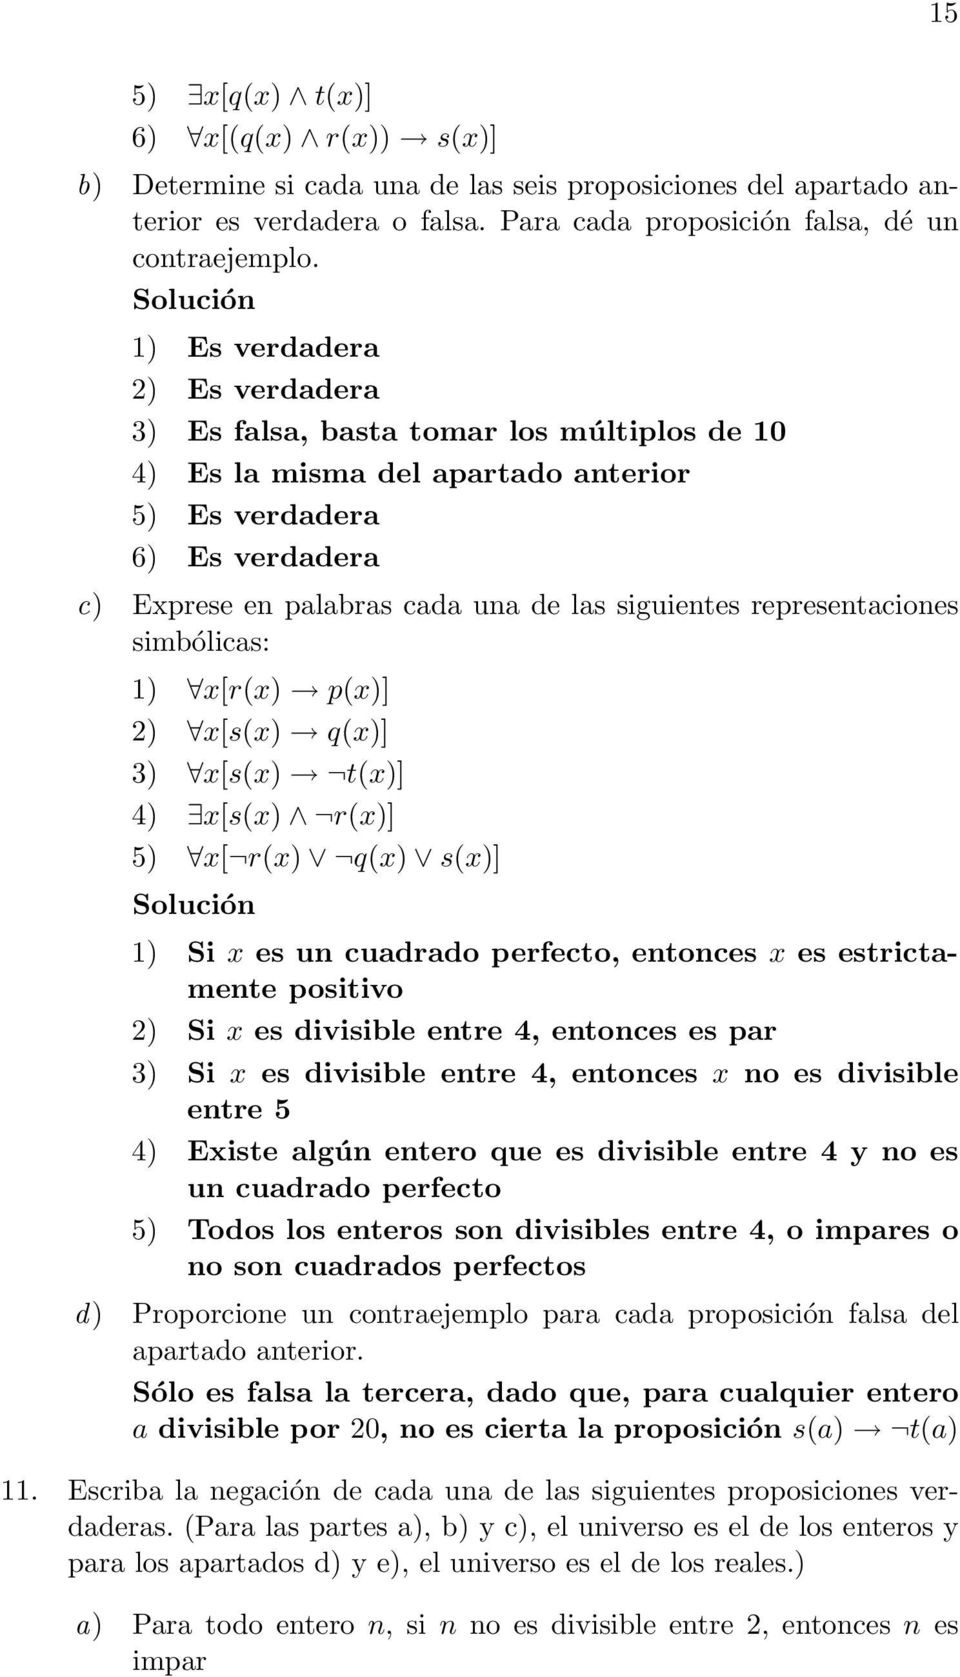 siguientes representaciones simbólicas: 1) x[r(x) p(x)] 2) x[s(x) q(x)] 3) x[s(x) t(x)] 4) x[s(x) r(x)] 5) x[ r(x) q(x) s(x)] Solución 1) Si x es un cuadrado perfecto, entonces x es estrictamente